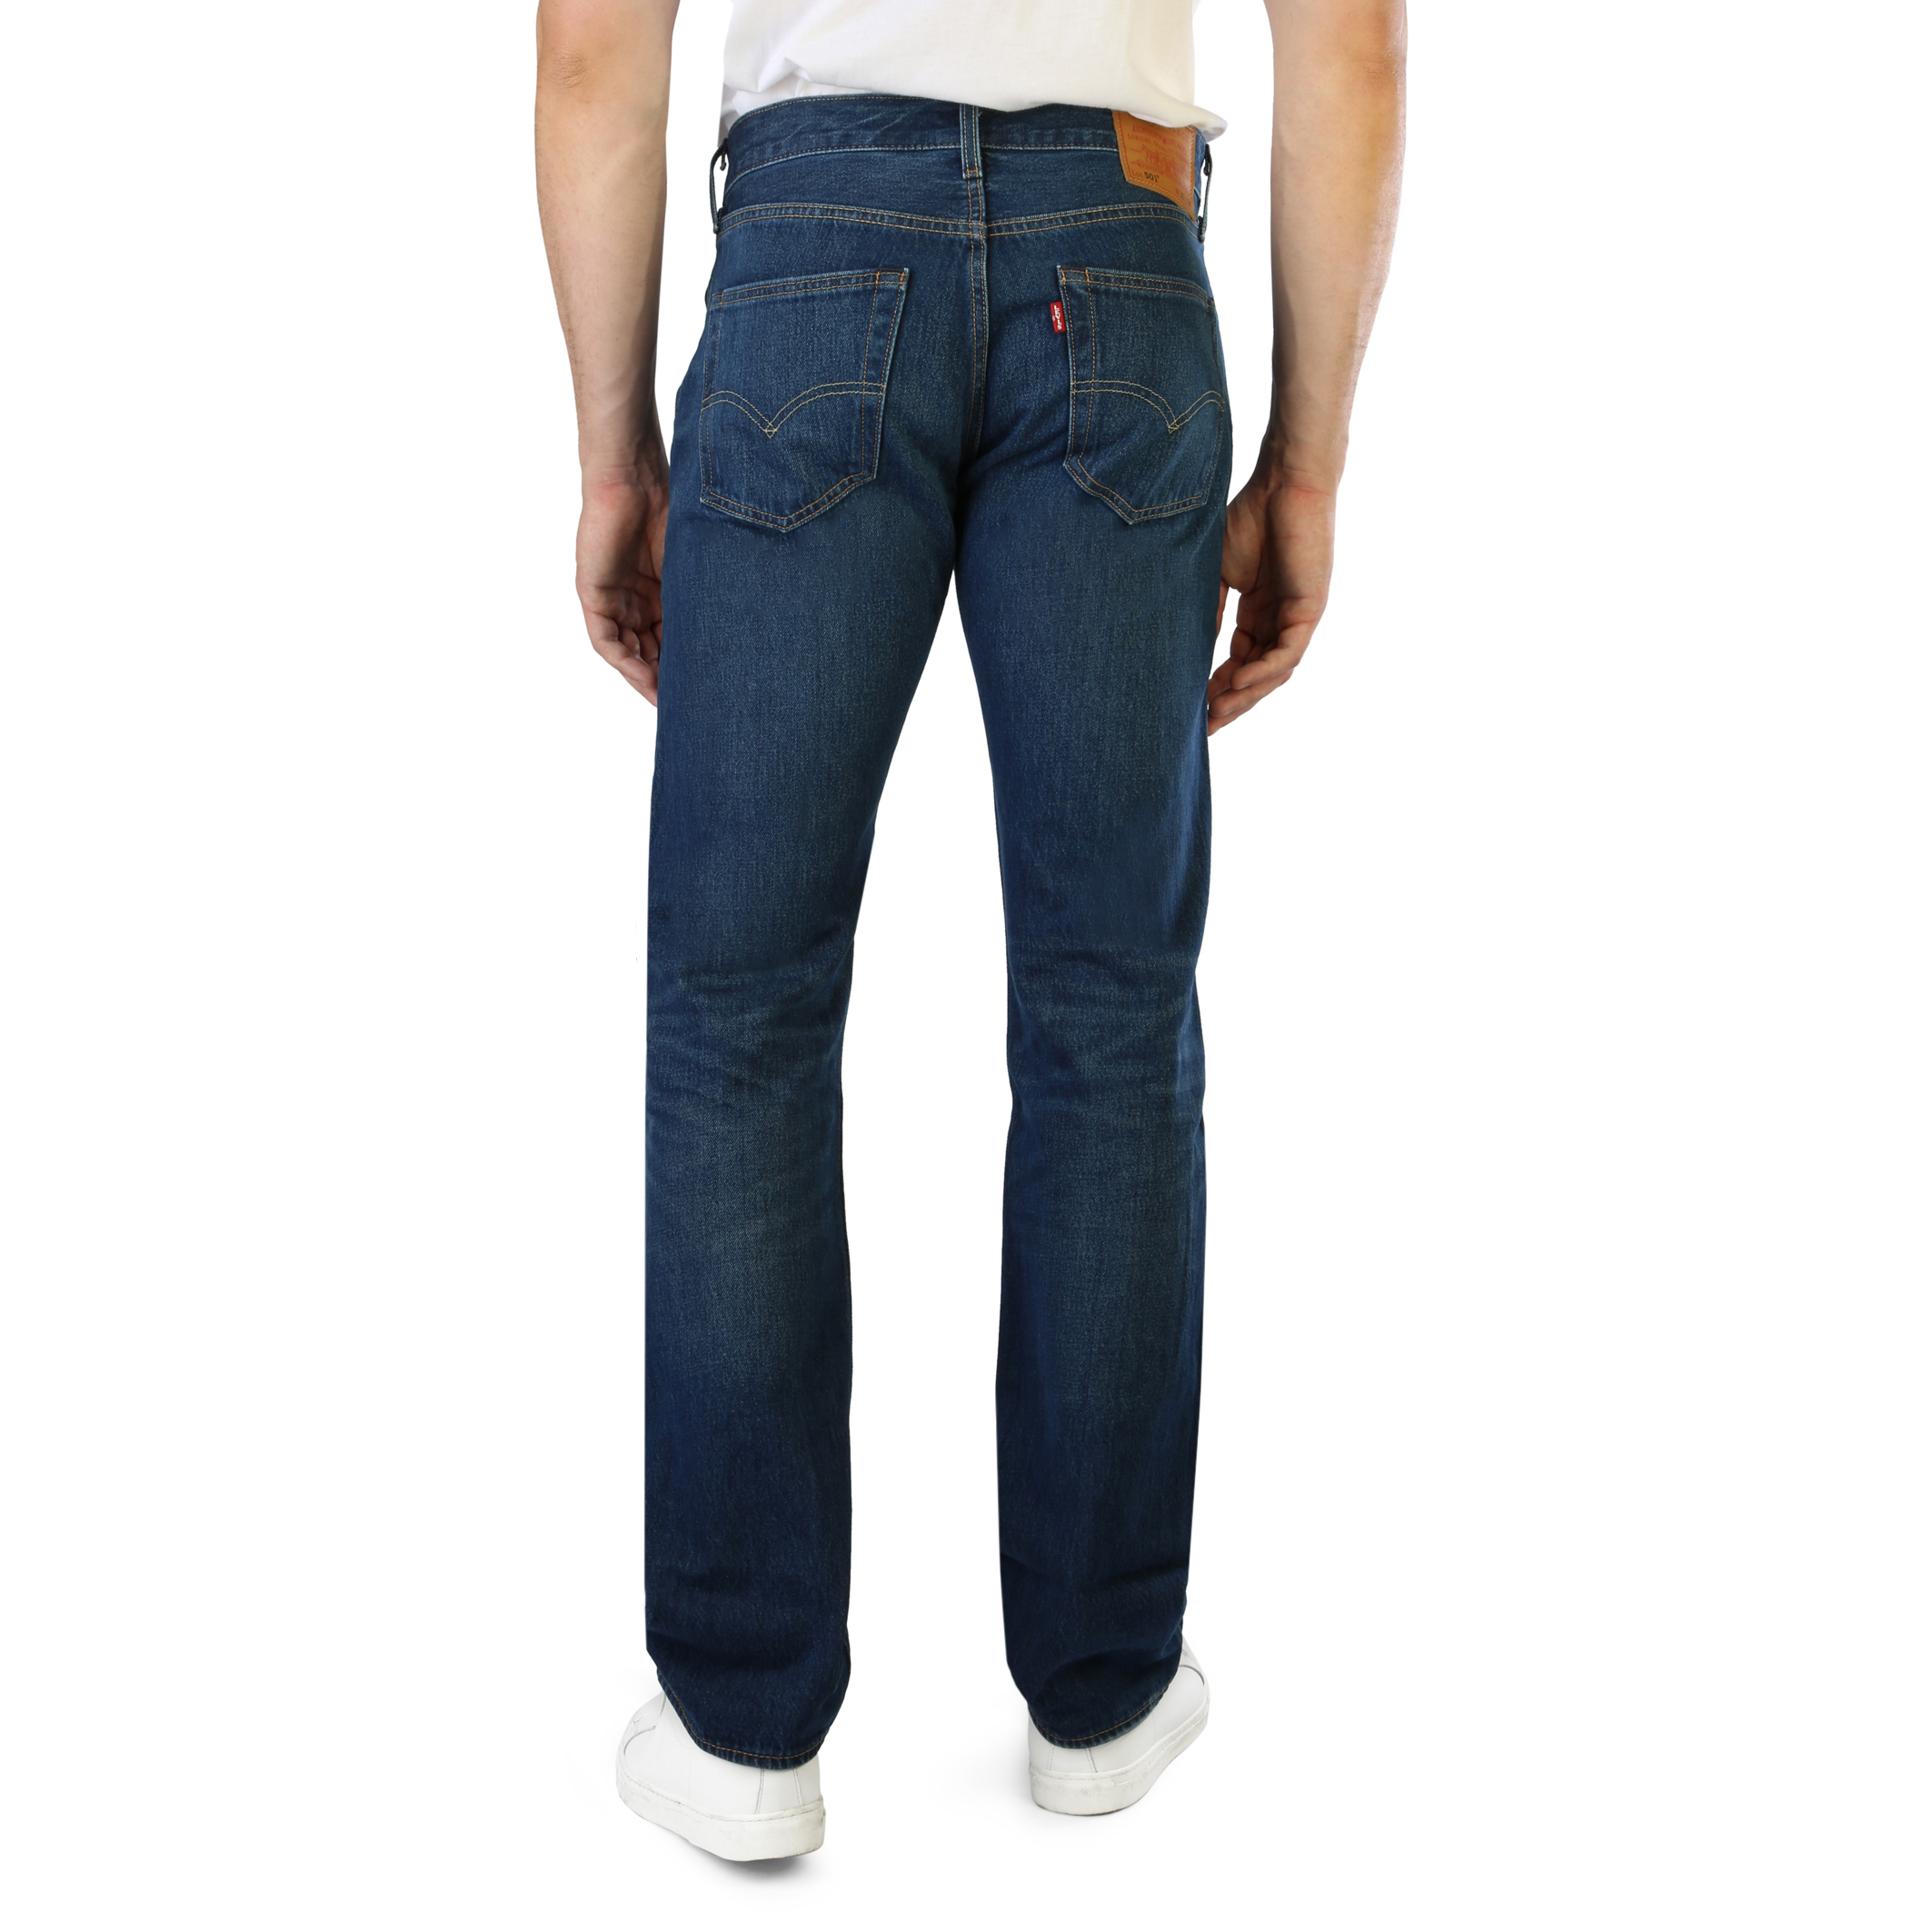 Levi's Blue Jeans for Men - 501